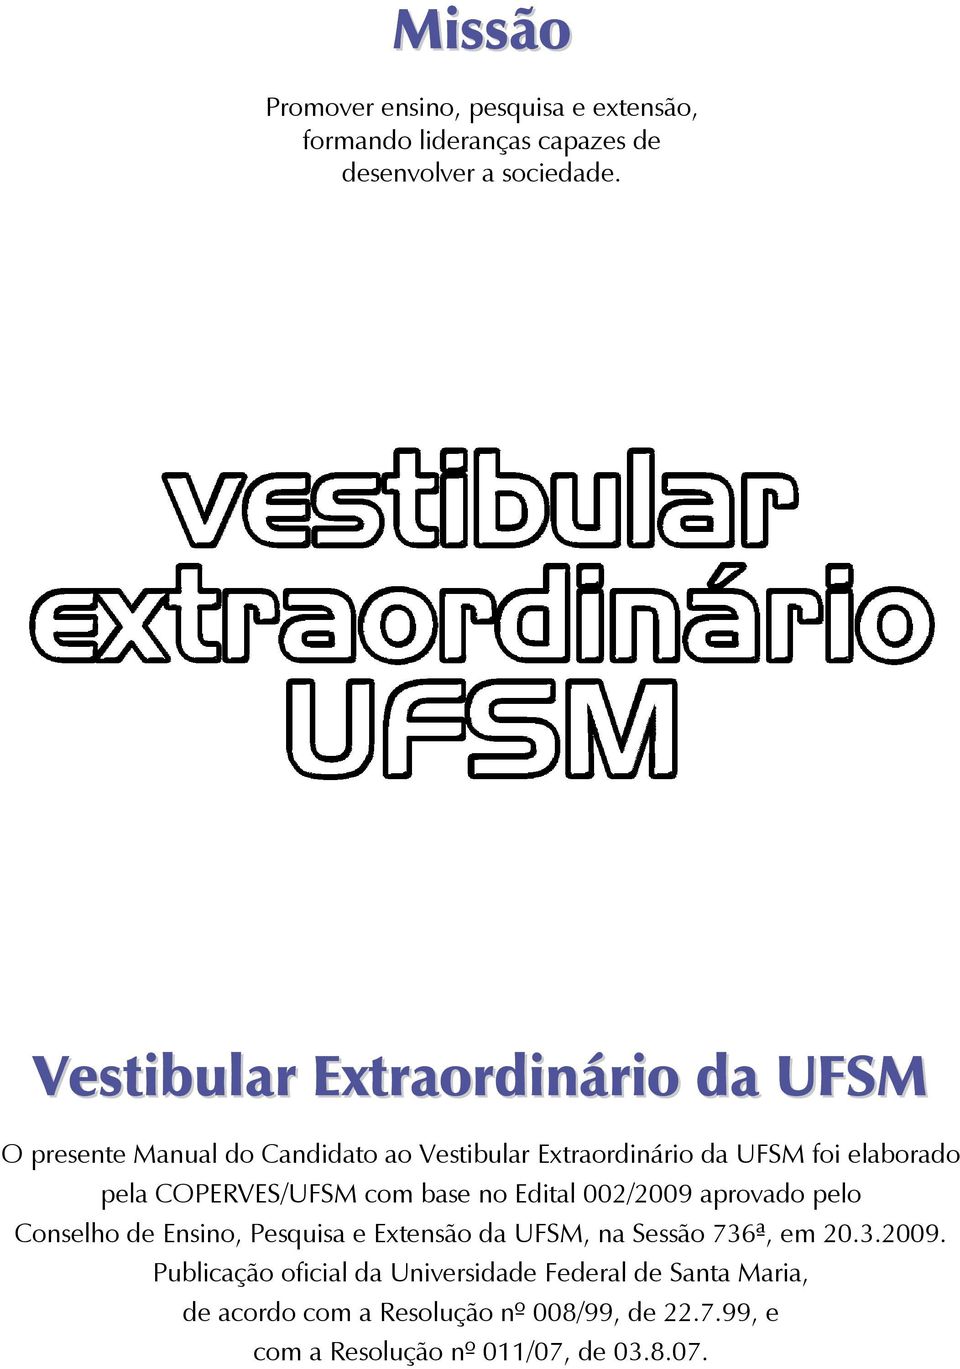 COPERVES/UFSM com base no Edital 002/2009 aprovado pelo Conselho de Ensino, Pesquisa e Extensão da UFSM, na Sessão 736ª, em 20.